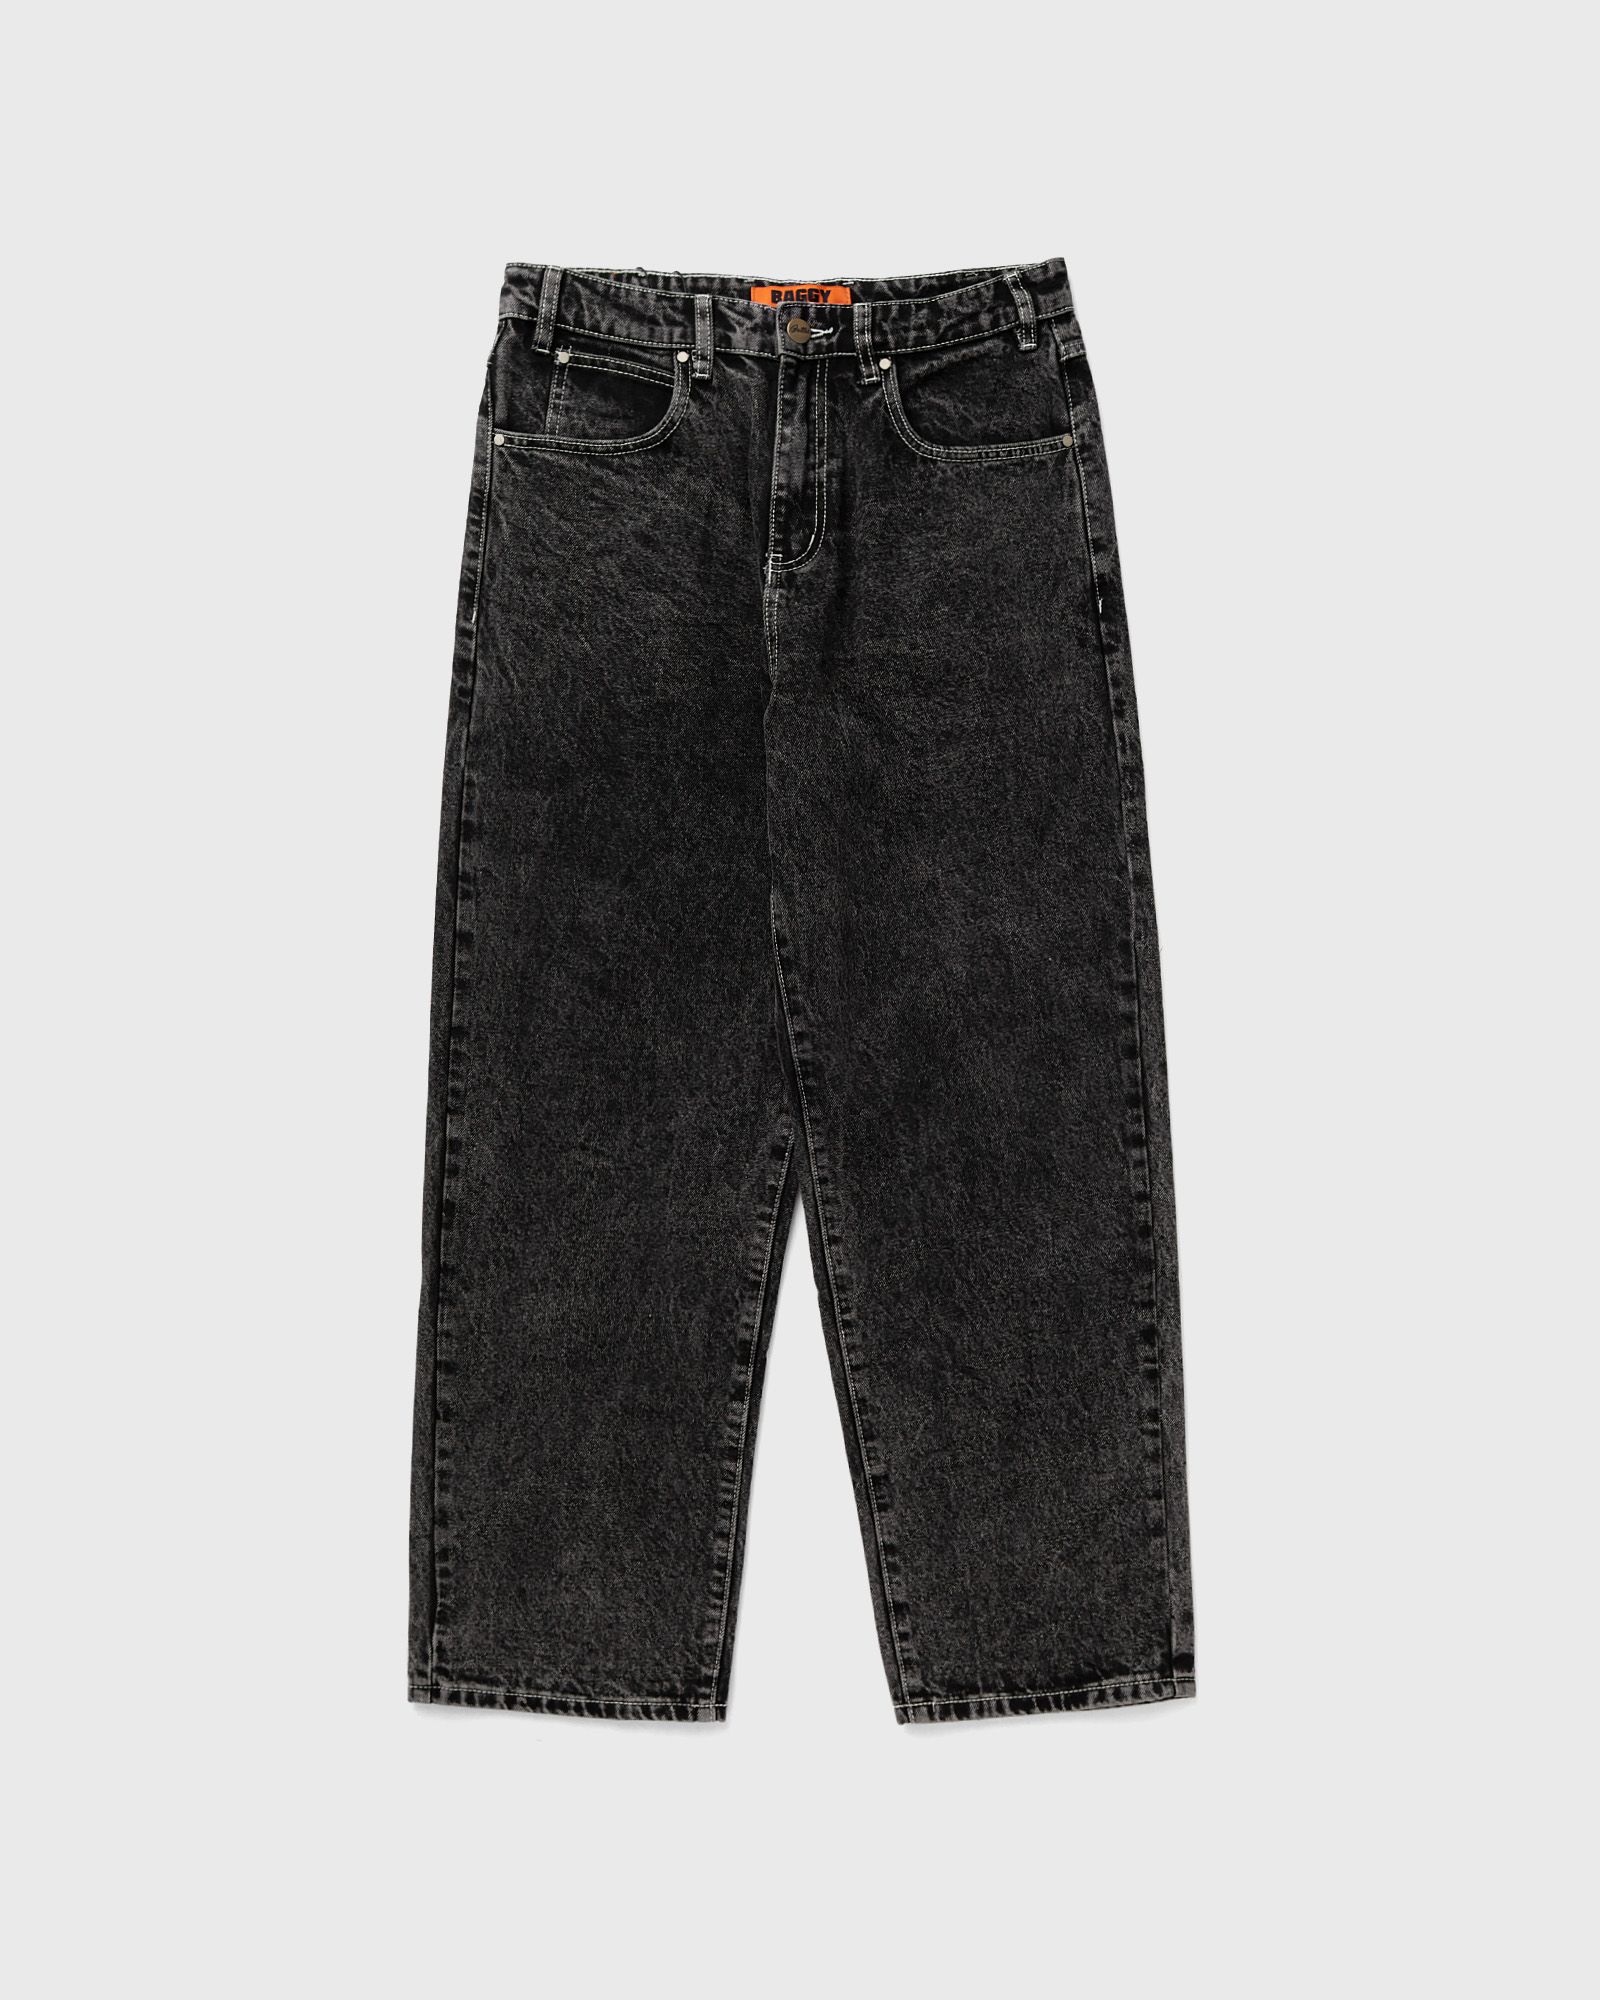 Butter Goods - applique denim jeans men jeans black in größe:m